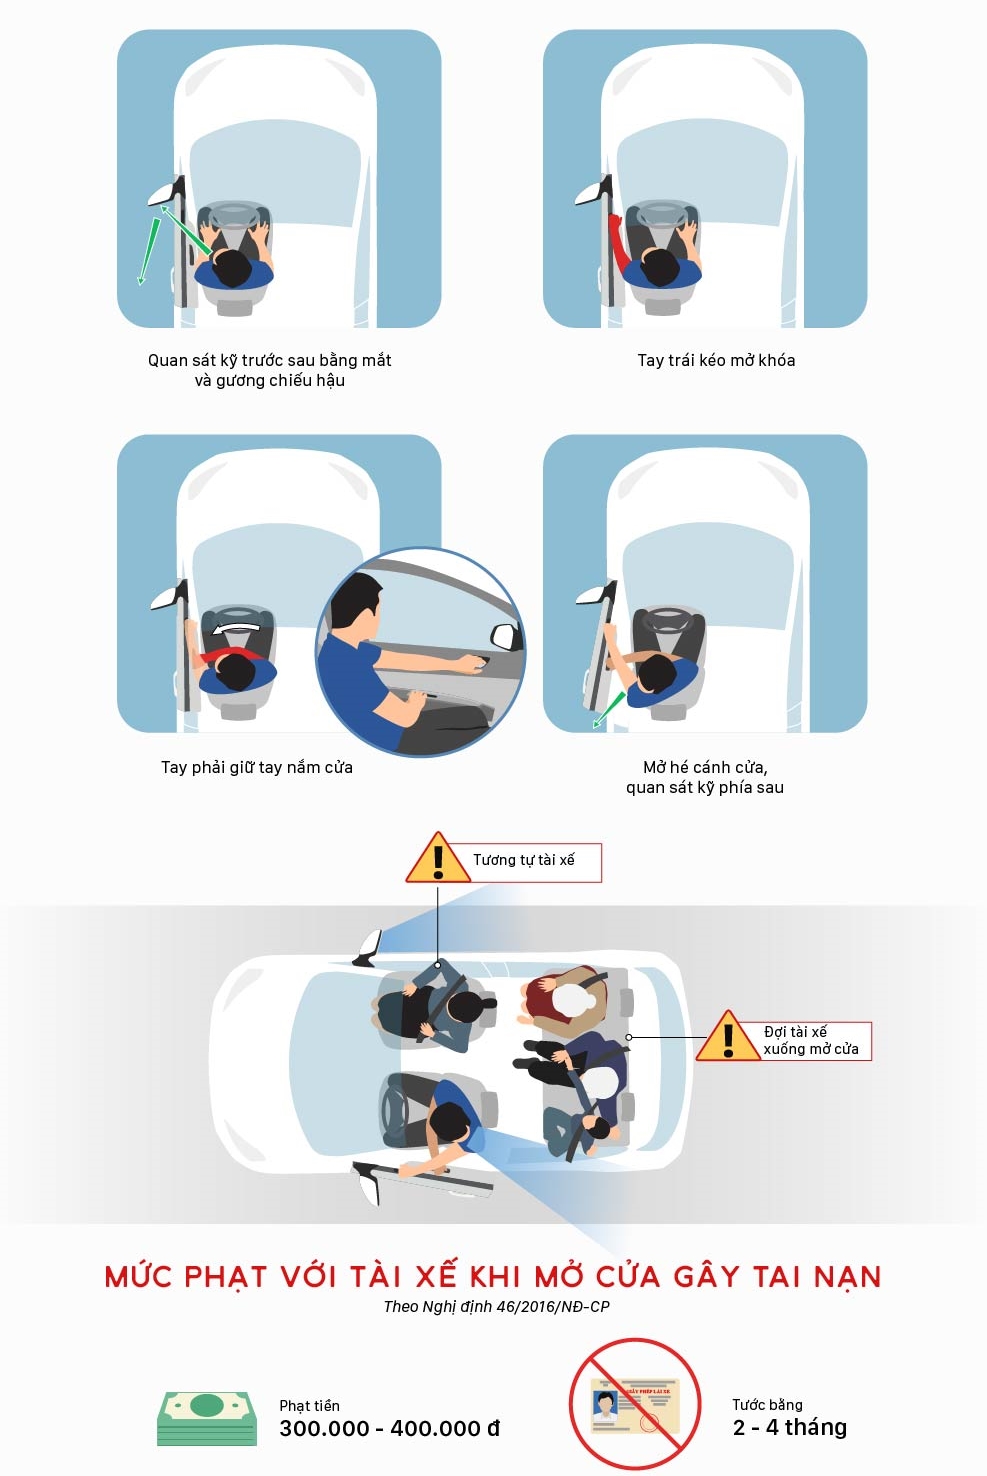 4 nguyên tắc mở cửa xe ô tô để đảm bảo an toàn.